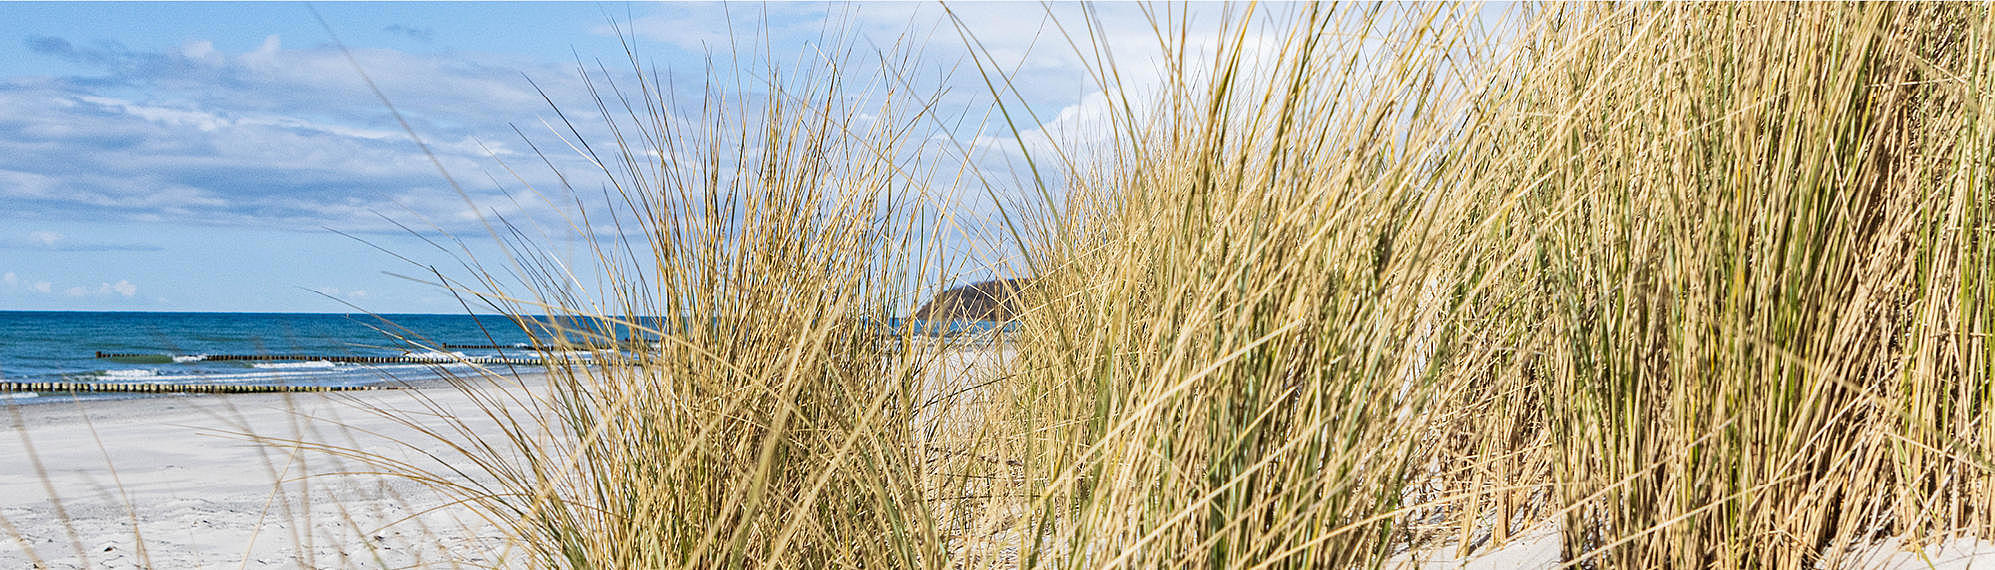 Natur und Ruhe auf der Insel Hiddensee genießen